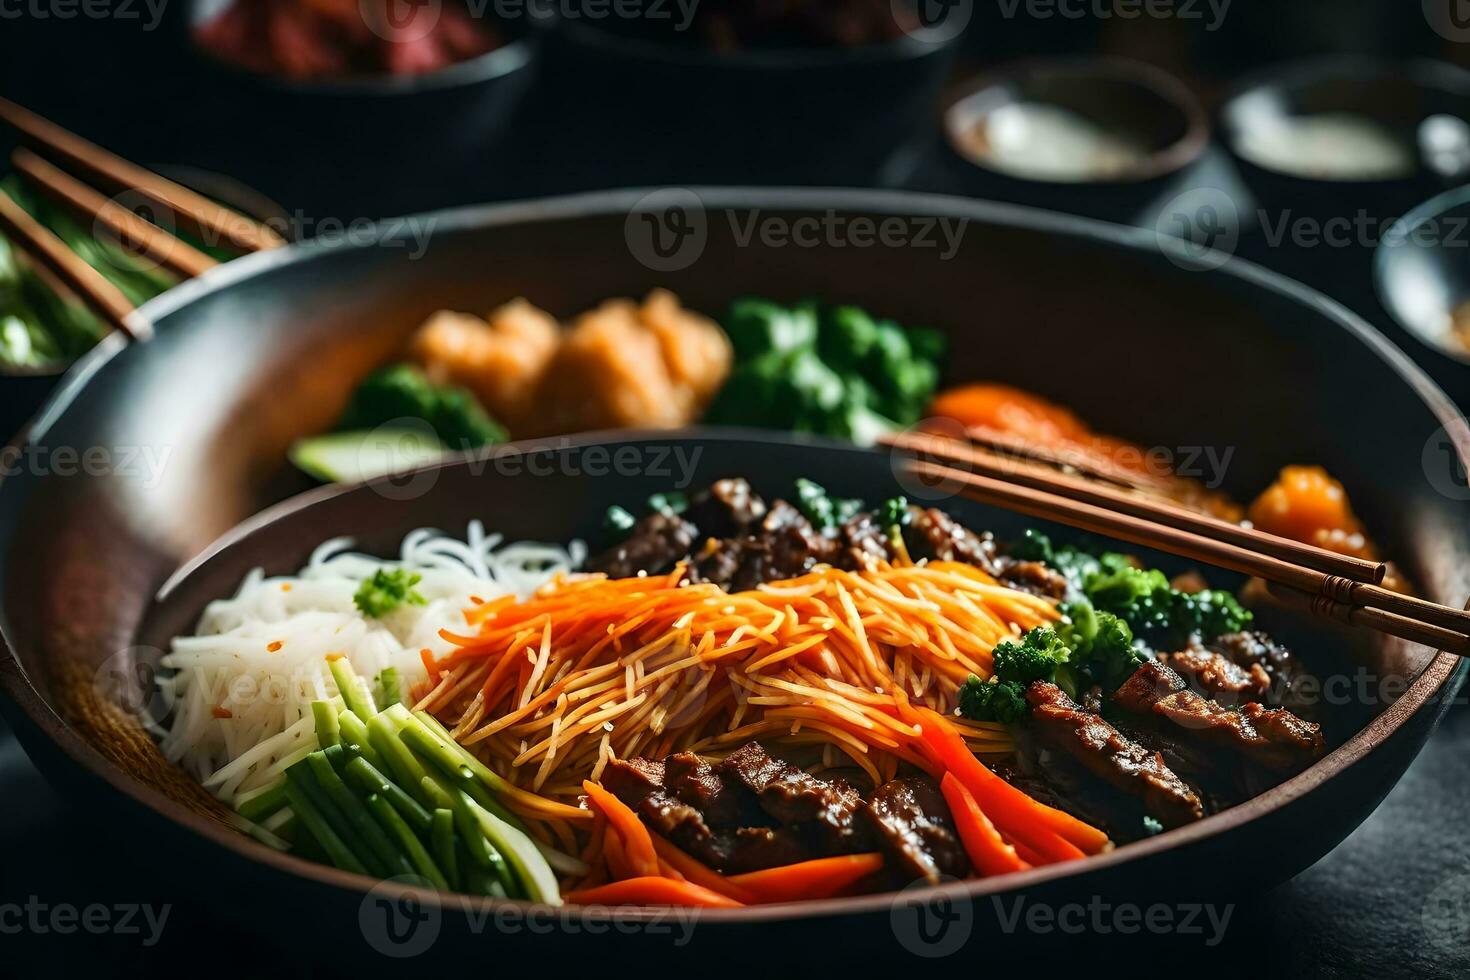 das Kamera ist ziehen um näher zu Show ein lecker und Beliebt Koreanisch Essen namens bibimbap Manchmal, es können Sein schwierig zu Zahl aus oder begreifen Was ist gehen auf und Warum es ist auftreten ai generiert foto